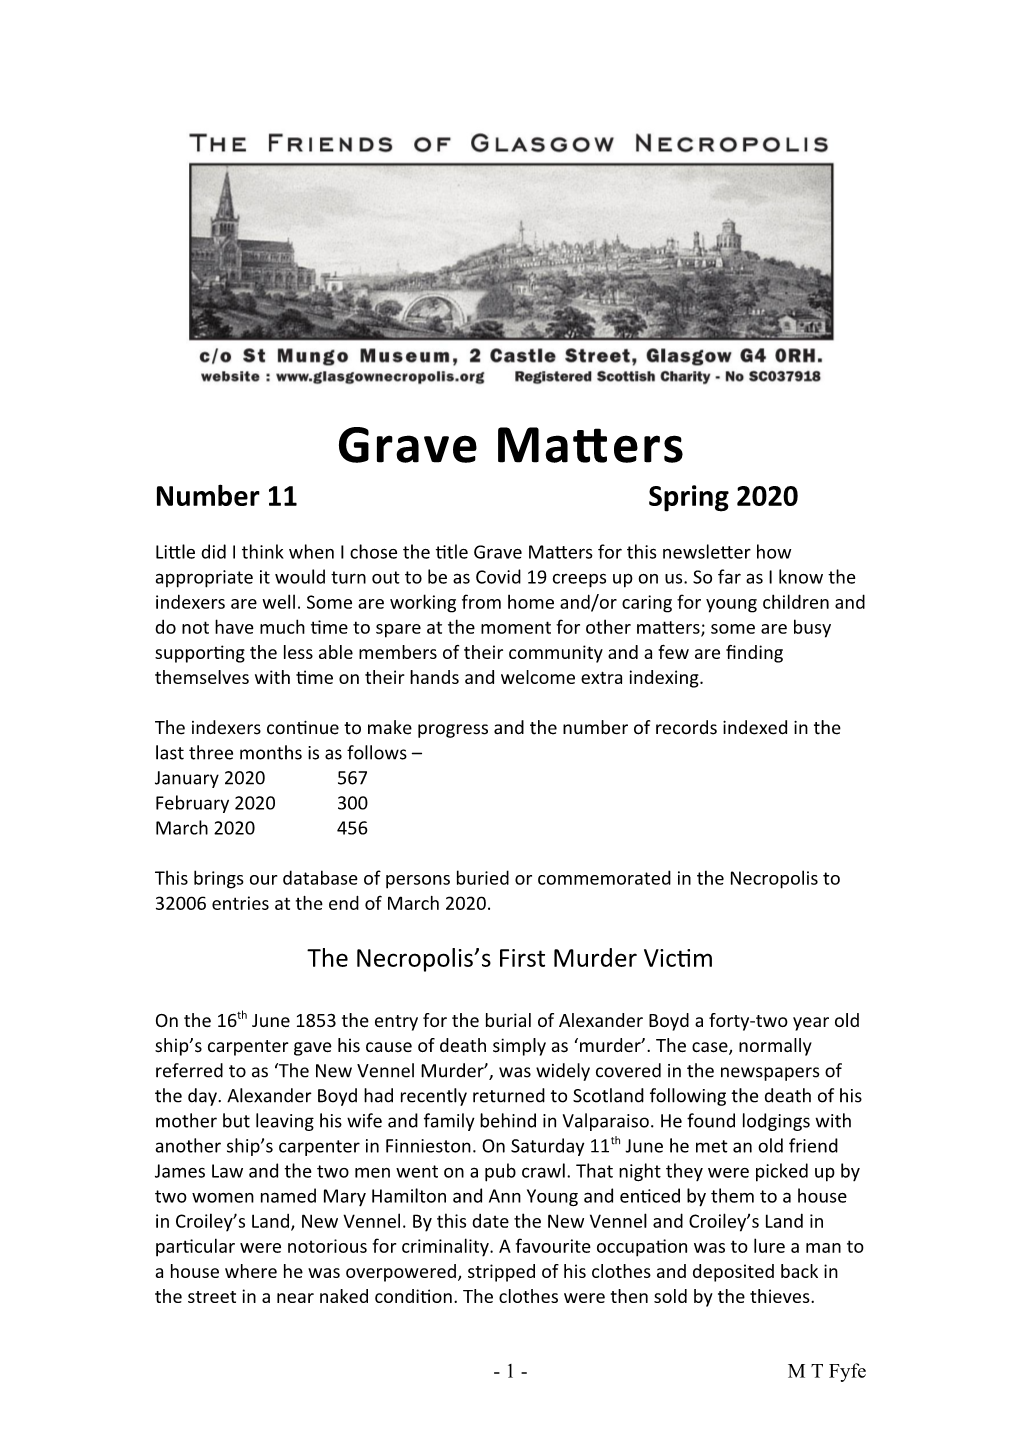 Grave Matters 11